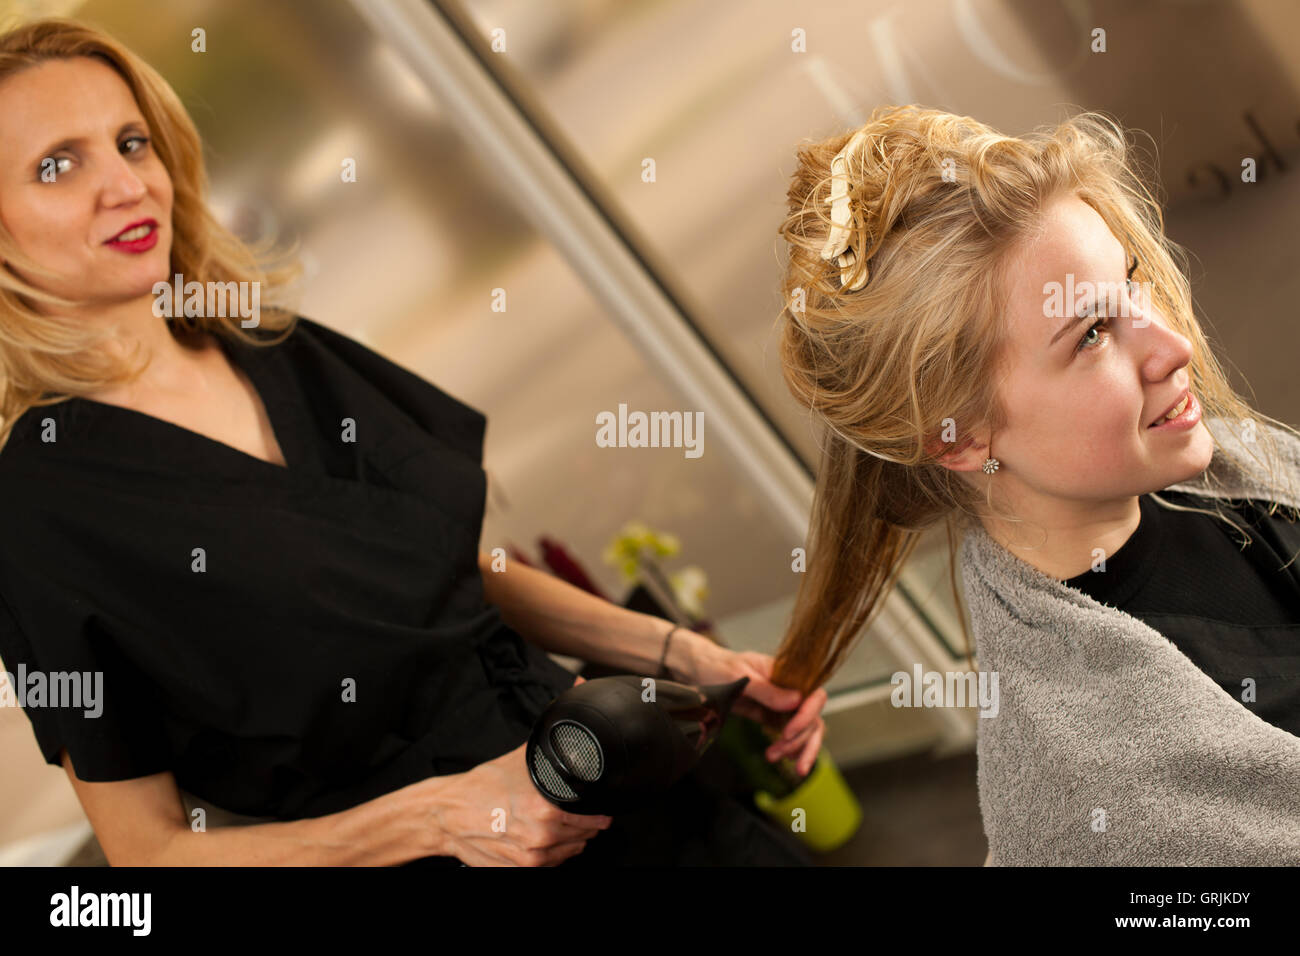 professionelle Friseur am Arbeitsplatz - Friseur, Frisur, um schöne junge blonde Kunde in einem professionellen studio Stockfoto